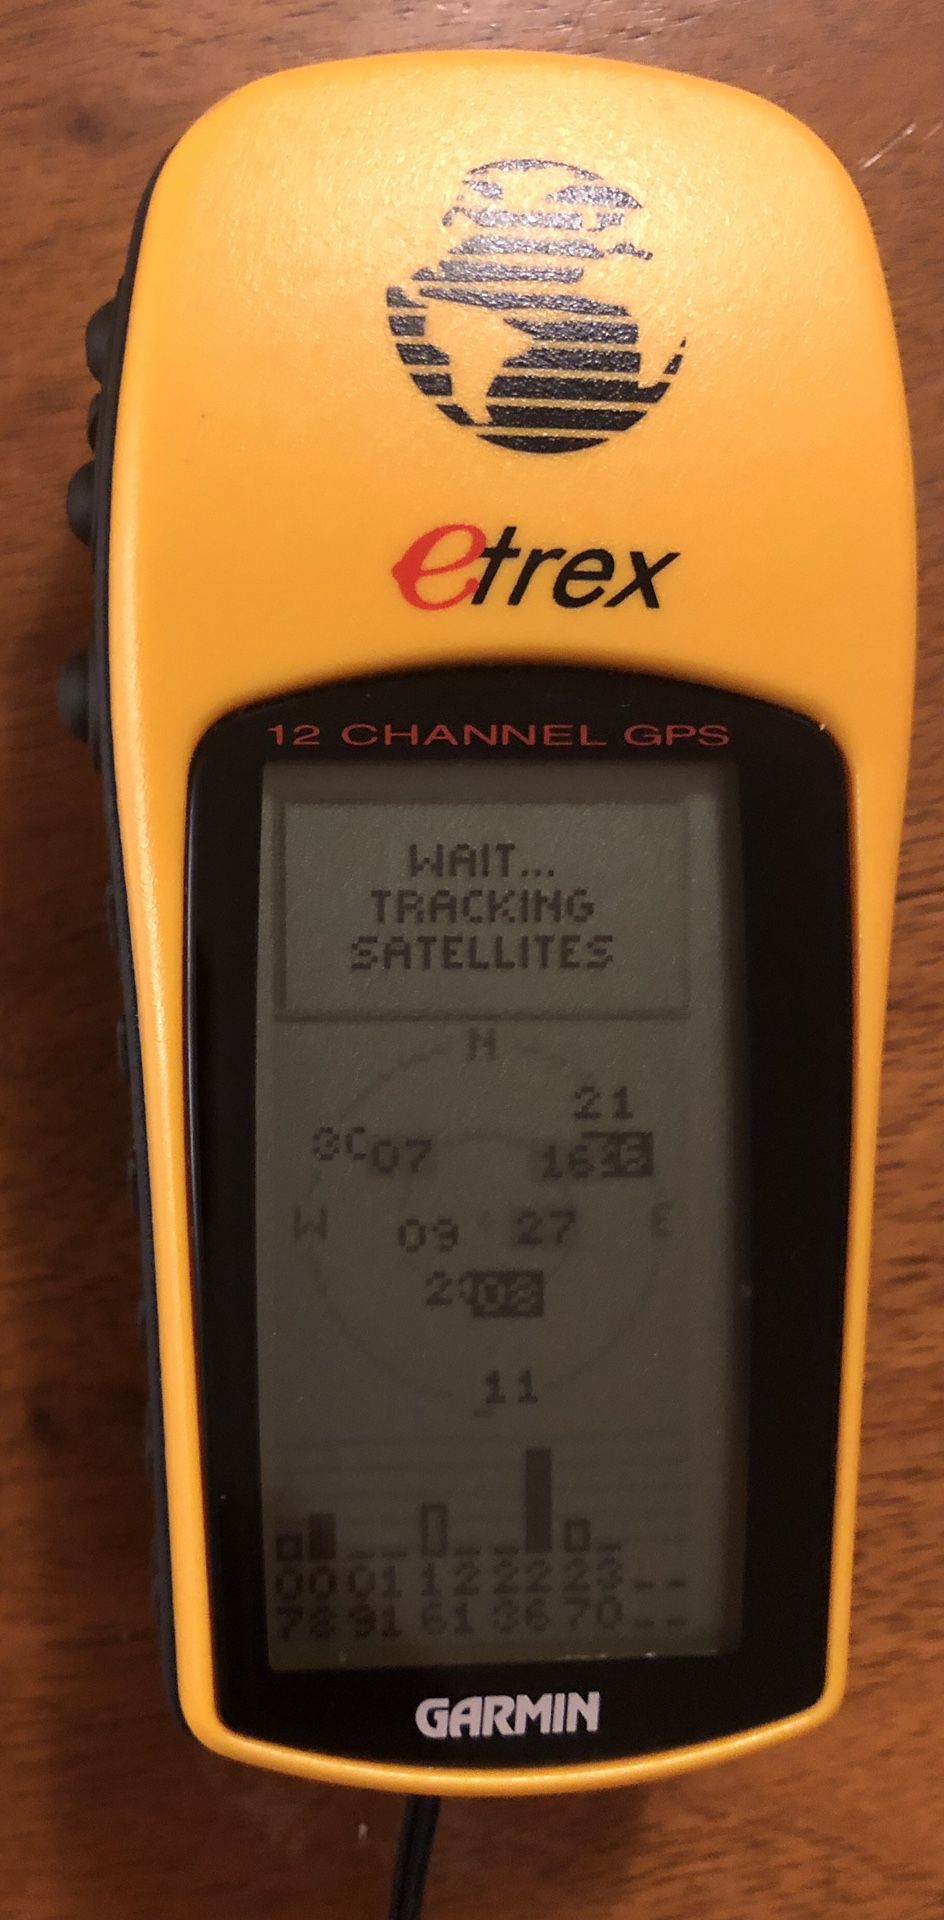 Garmin eTrex 12 Channel GPS Unit - Hiking, Walking, Biking - Like New